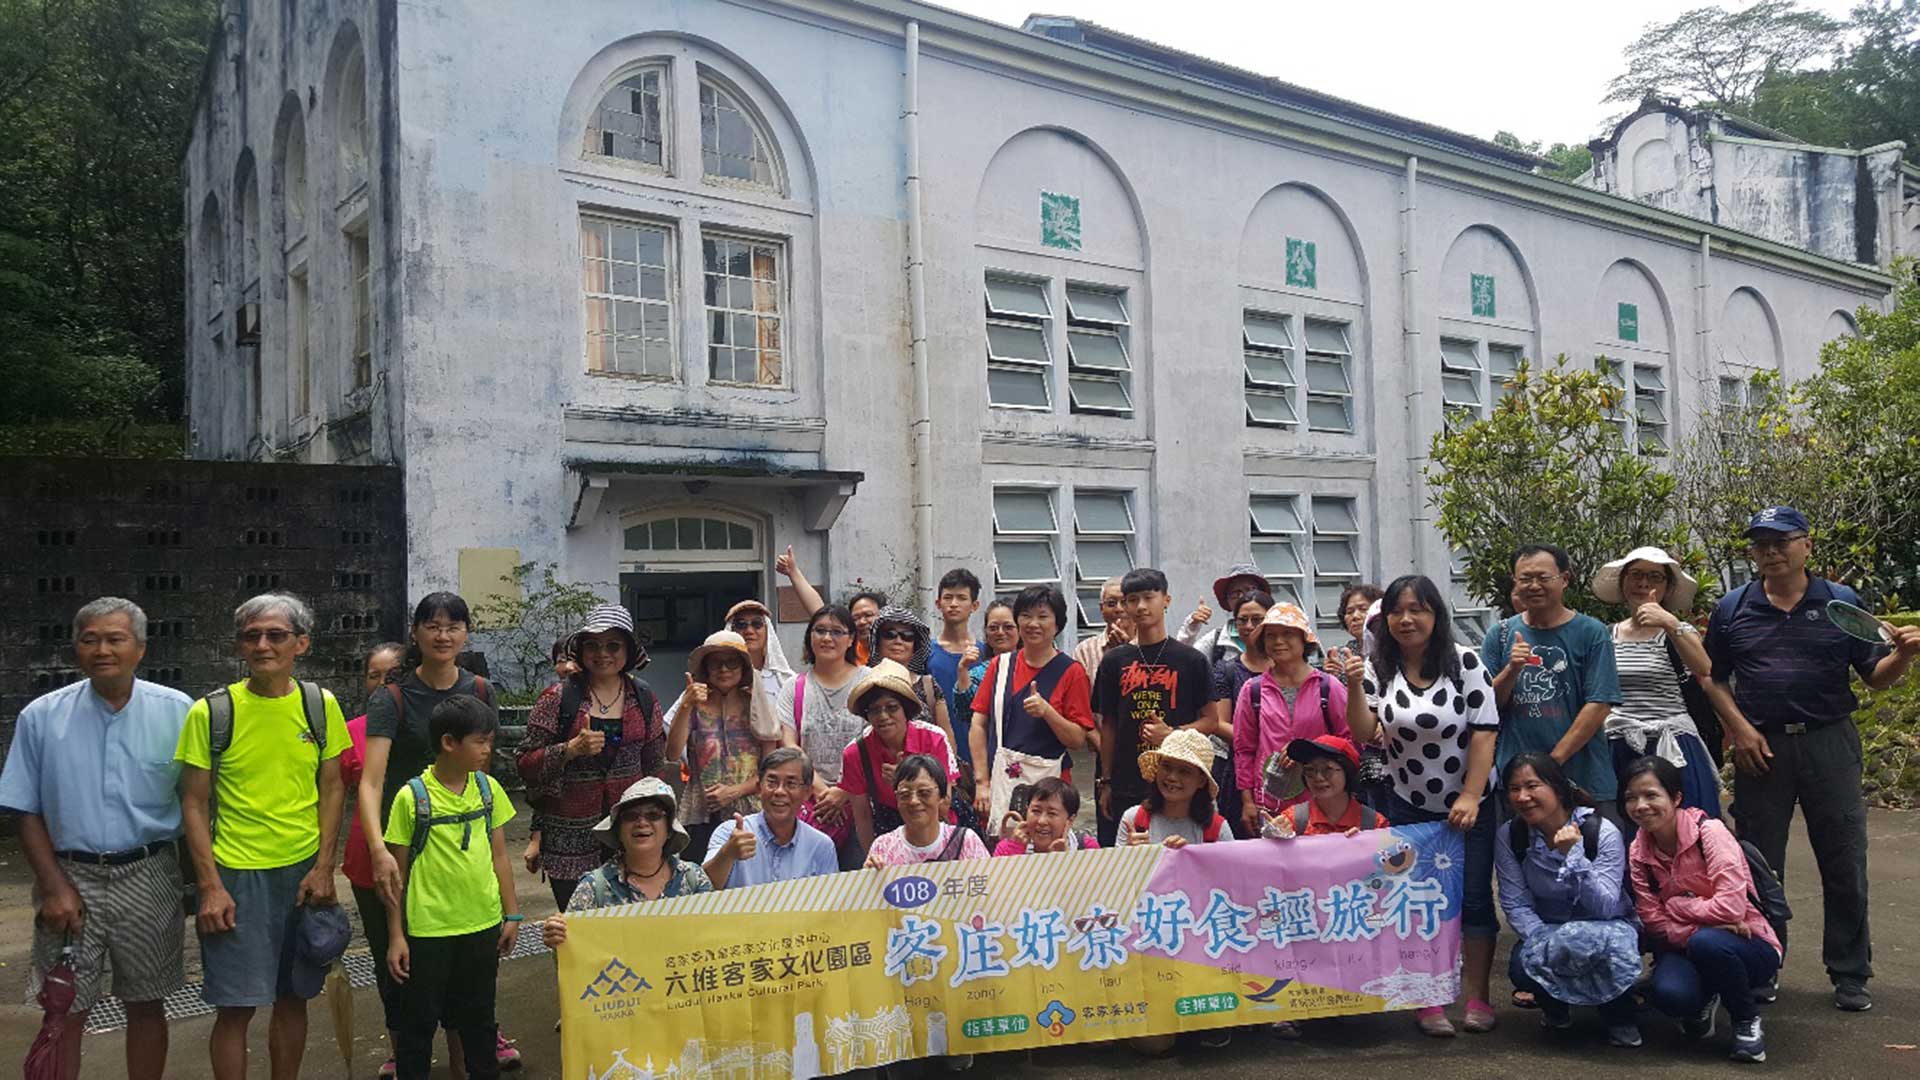 Liudui Hakka light trip with pleasant tour and good food—group photos taken in Zhuzimen Power Plant